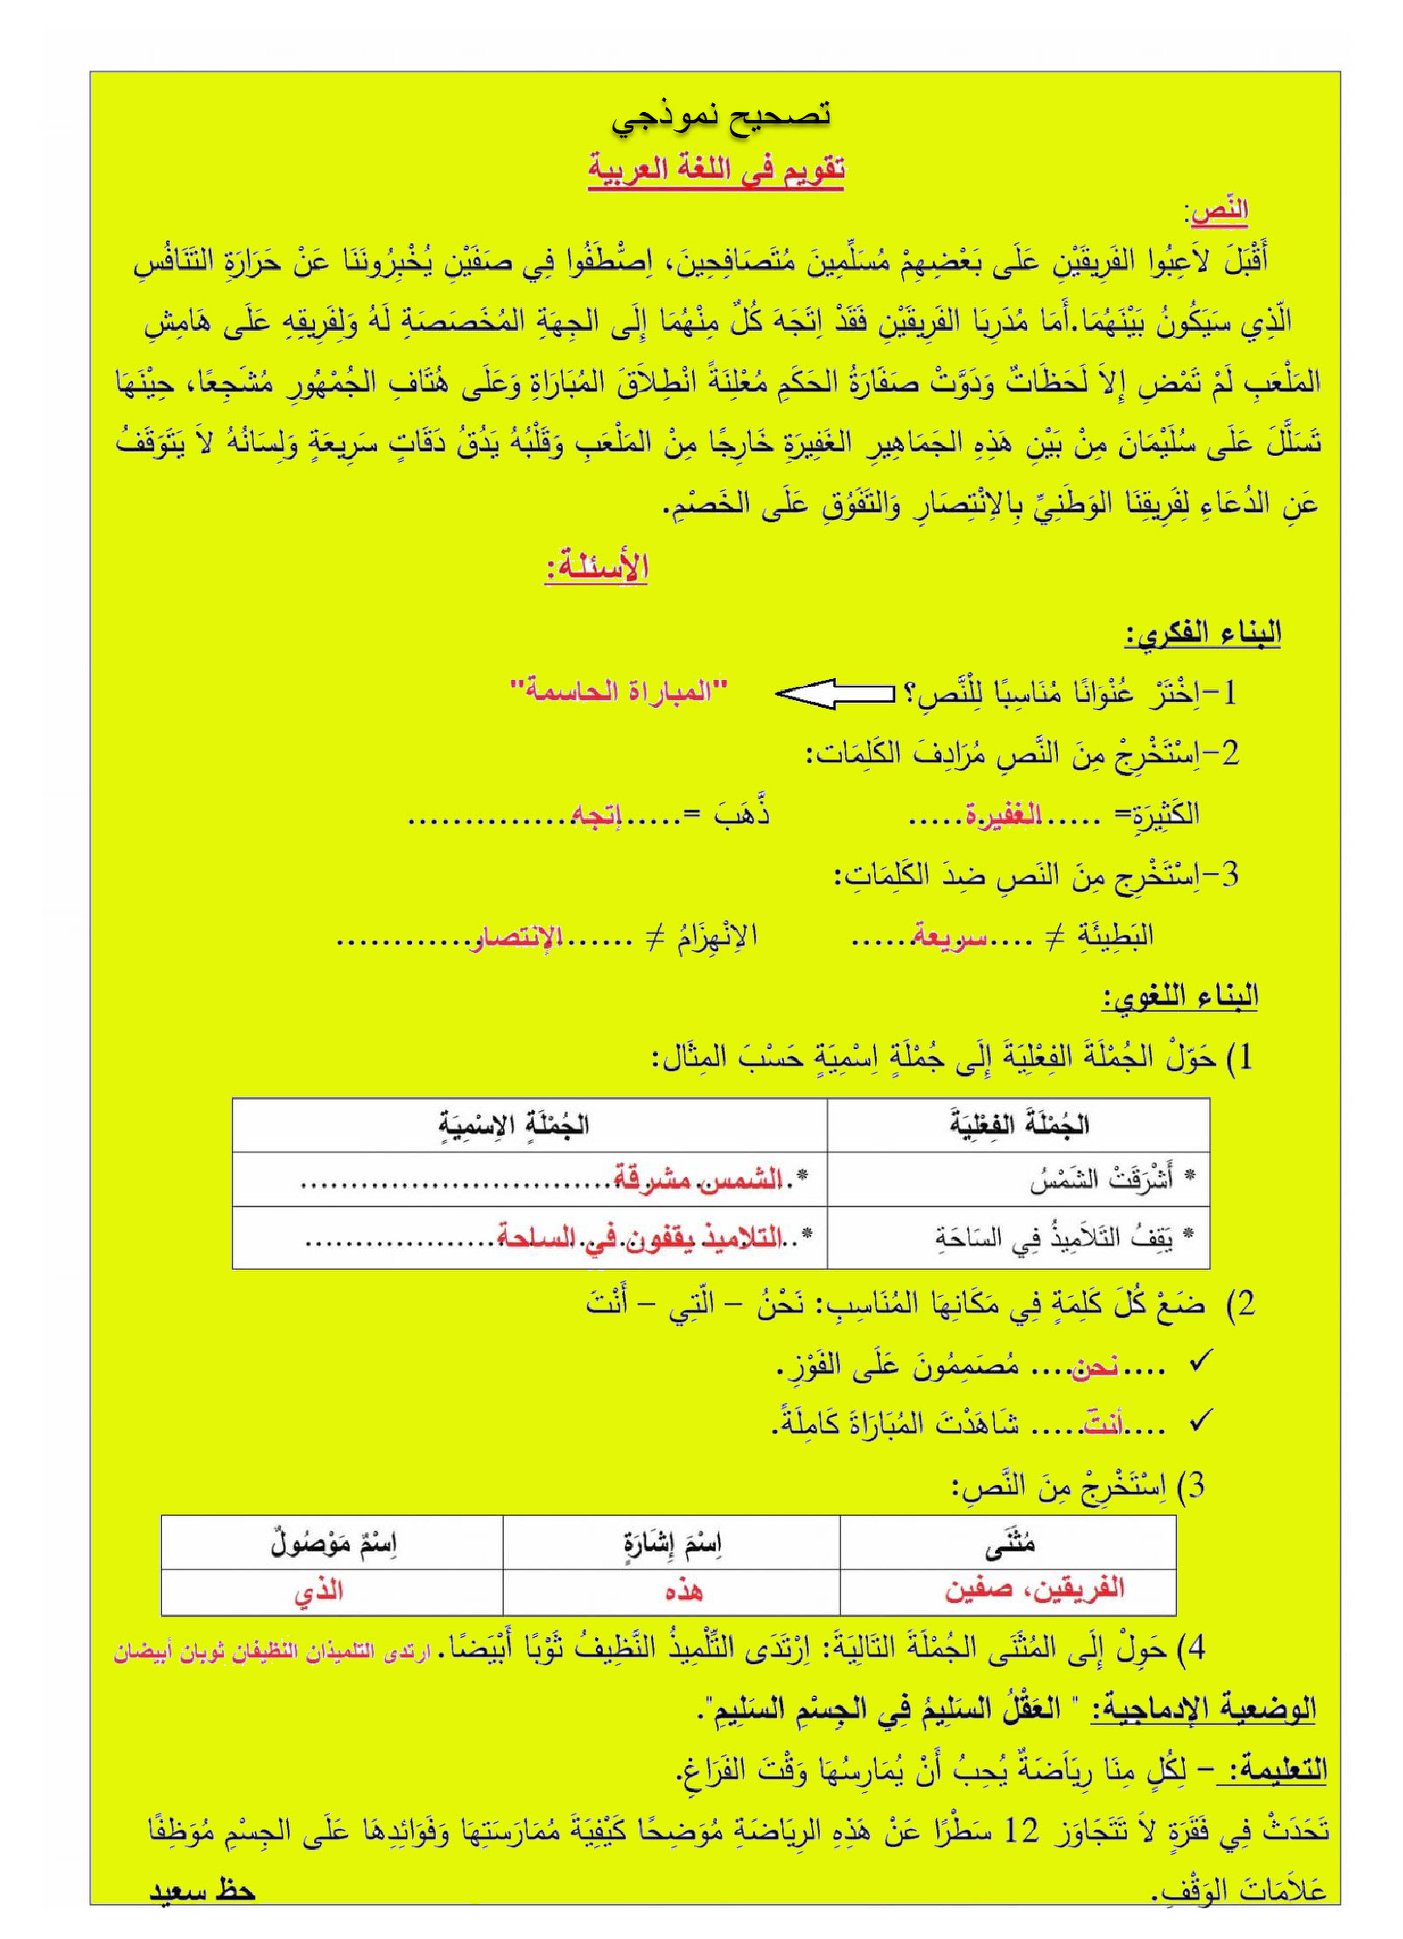 اختبار الفصل الثاني في اللغة العربية مع الحل | الثالثة ابتدائي | الموضوع 04